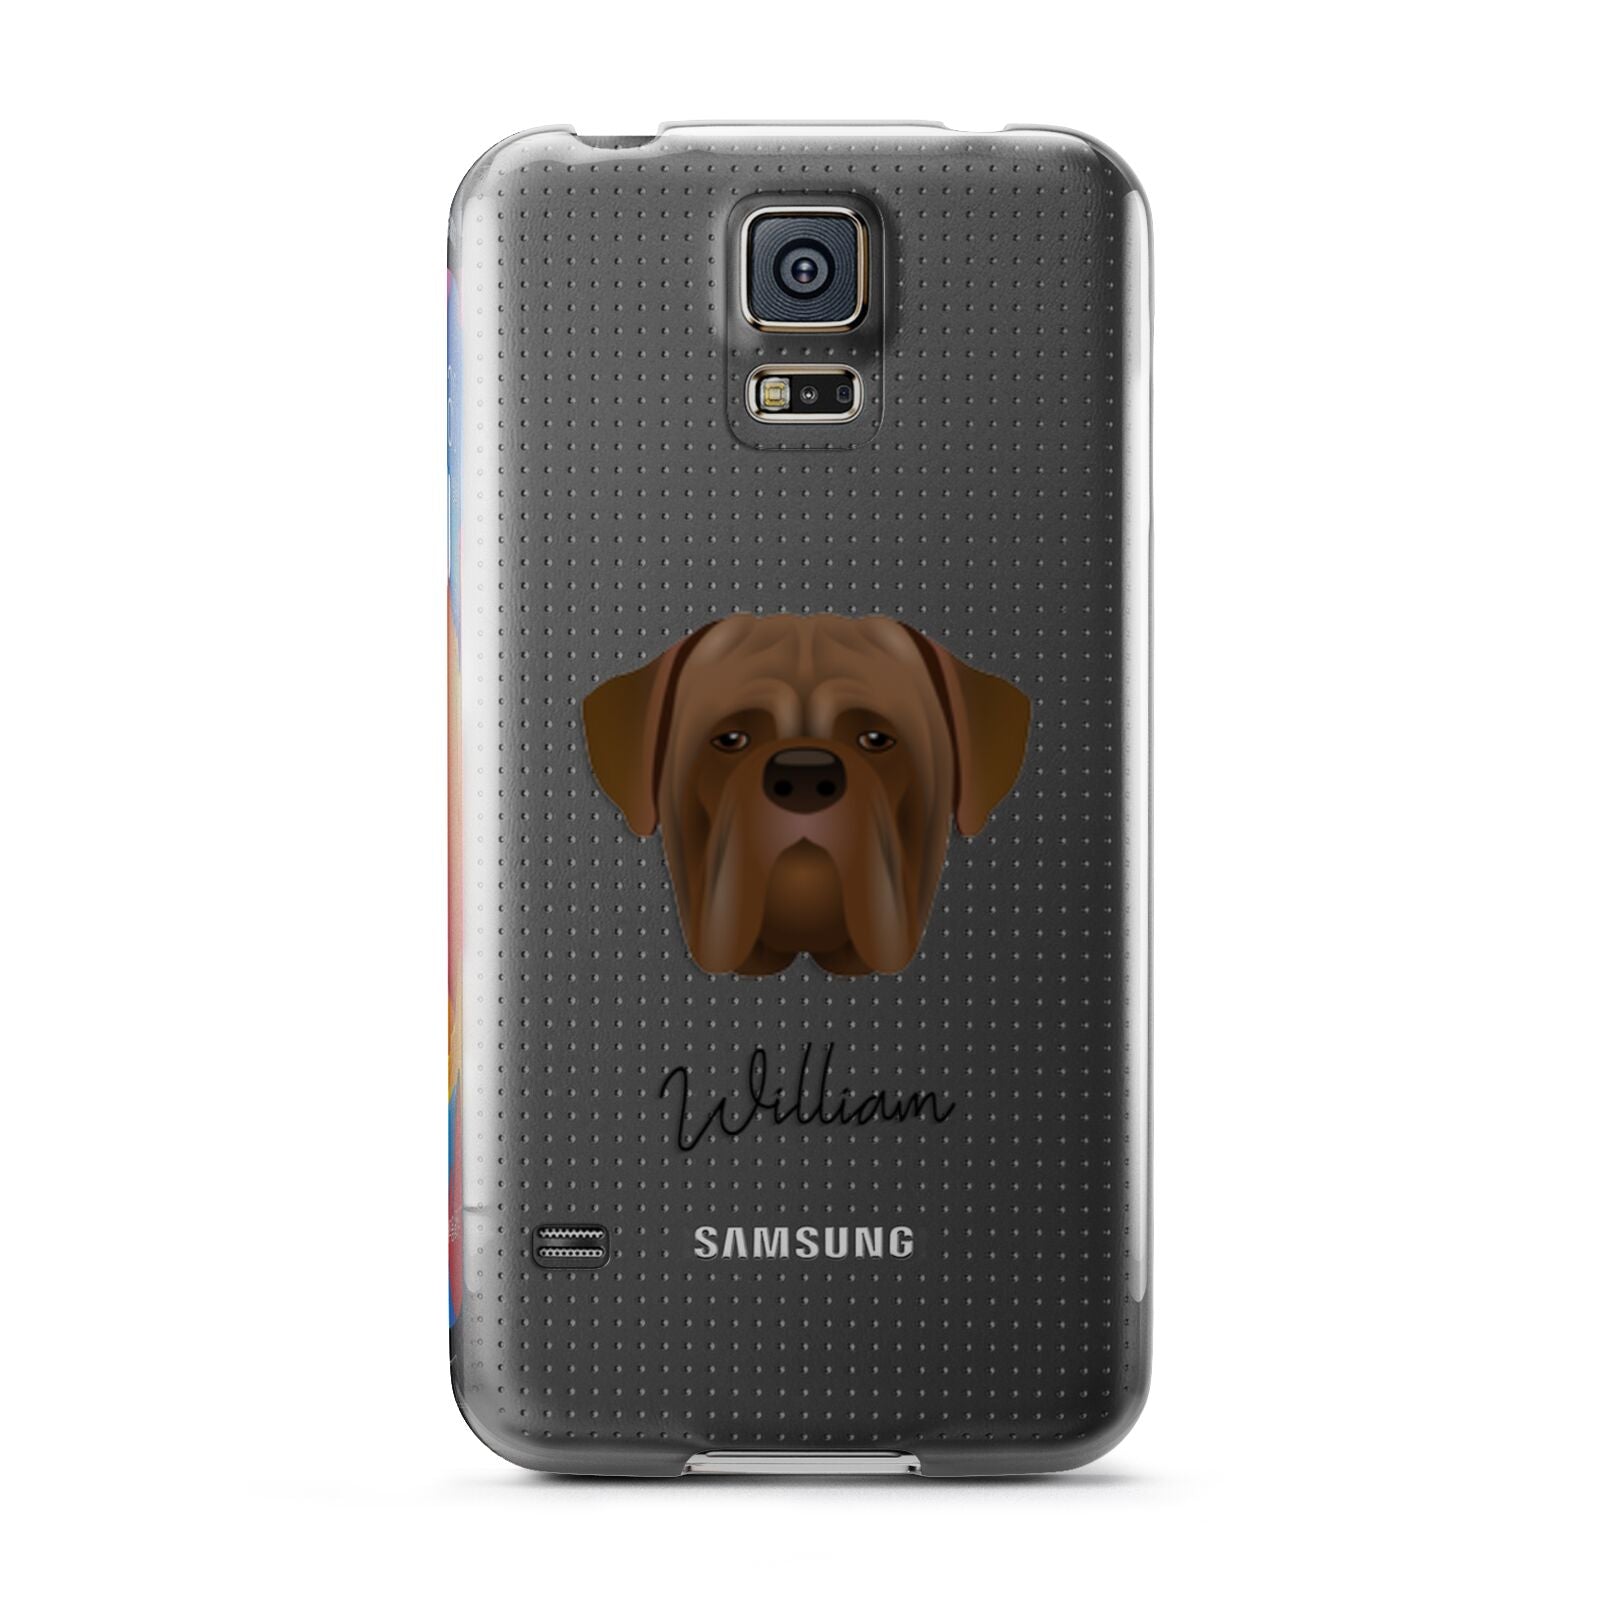 Dogue de Bordeaux Personalised Samsung Galaxy S5 Case